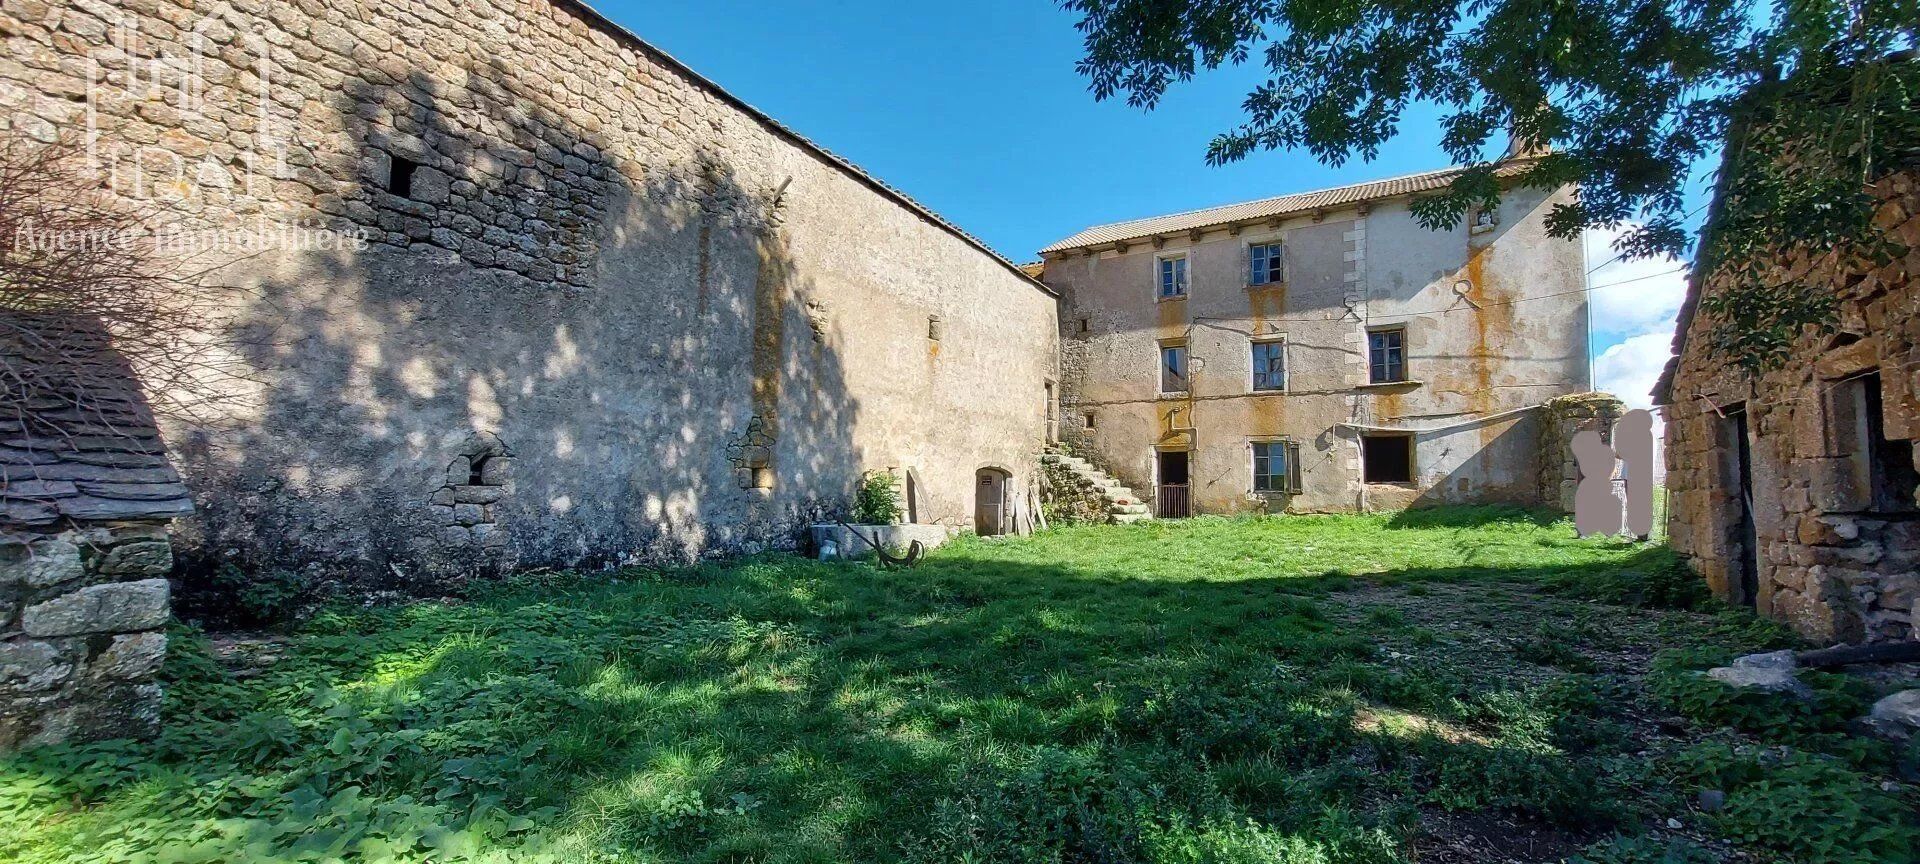 Vente Maison 175 m² à Châteauneuf-de-Randon 118 500 €